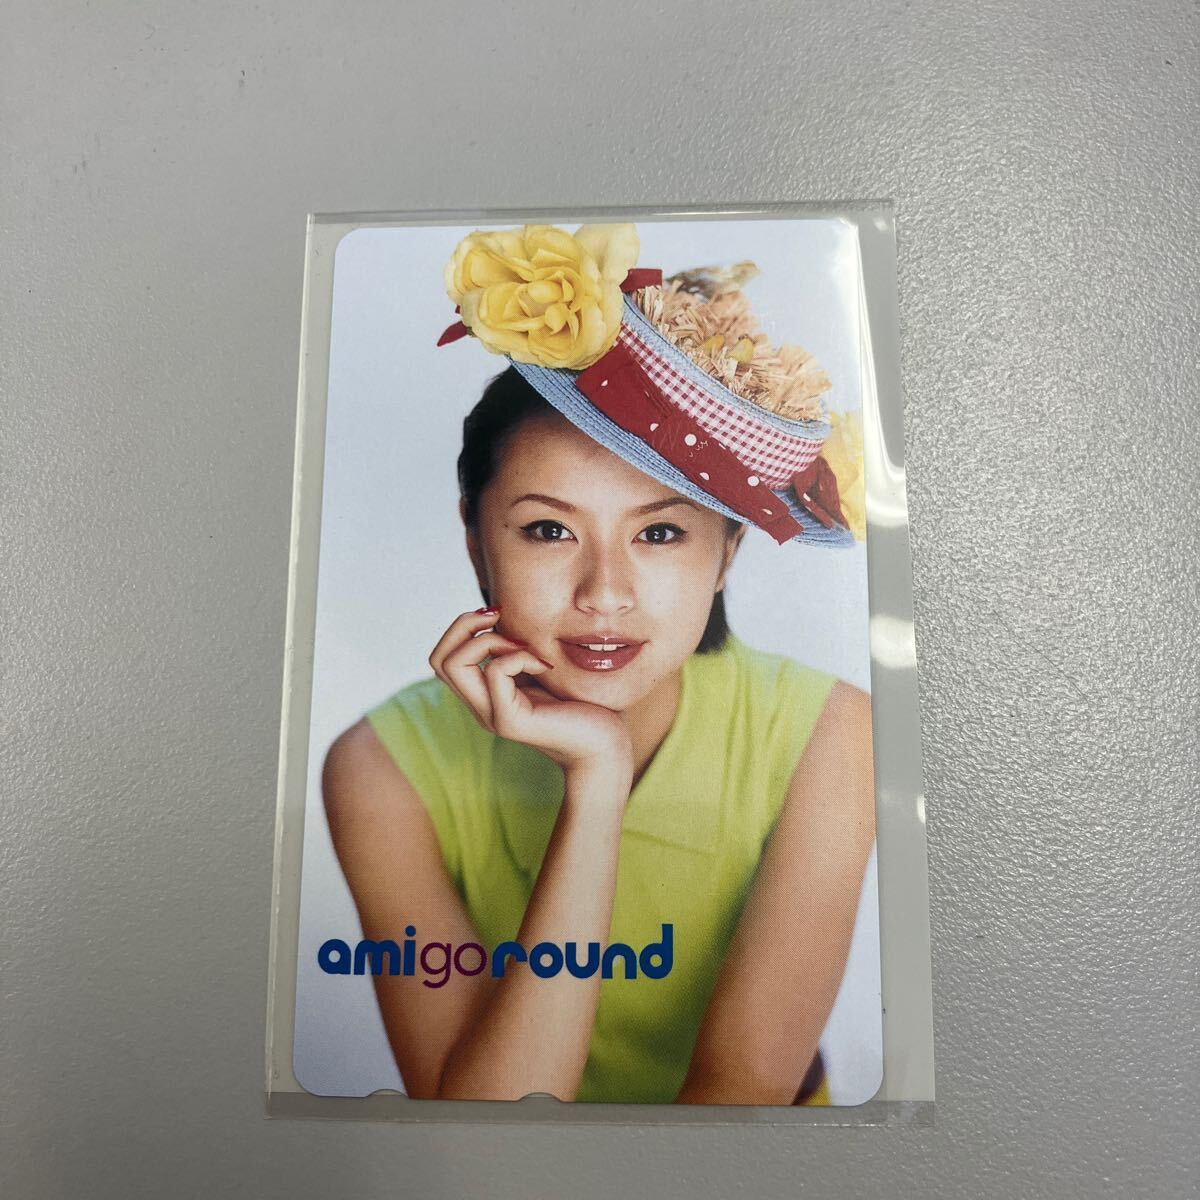  Suzuki Ami ami go round телефонная карточка ( утиль )